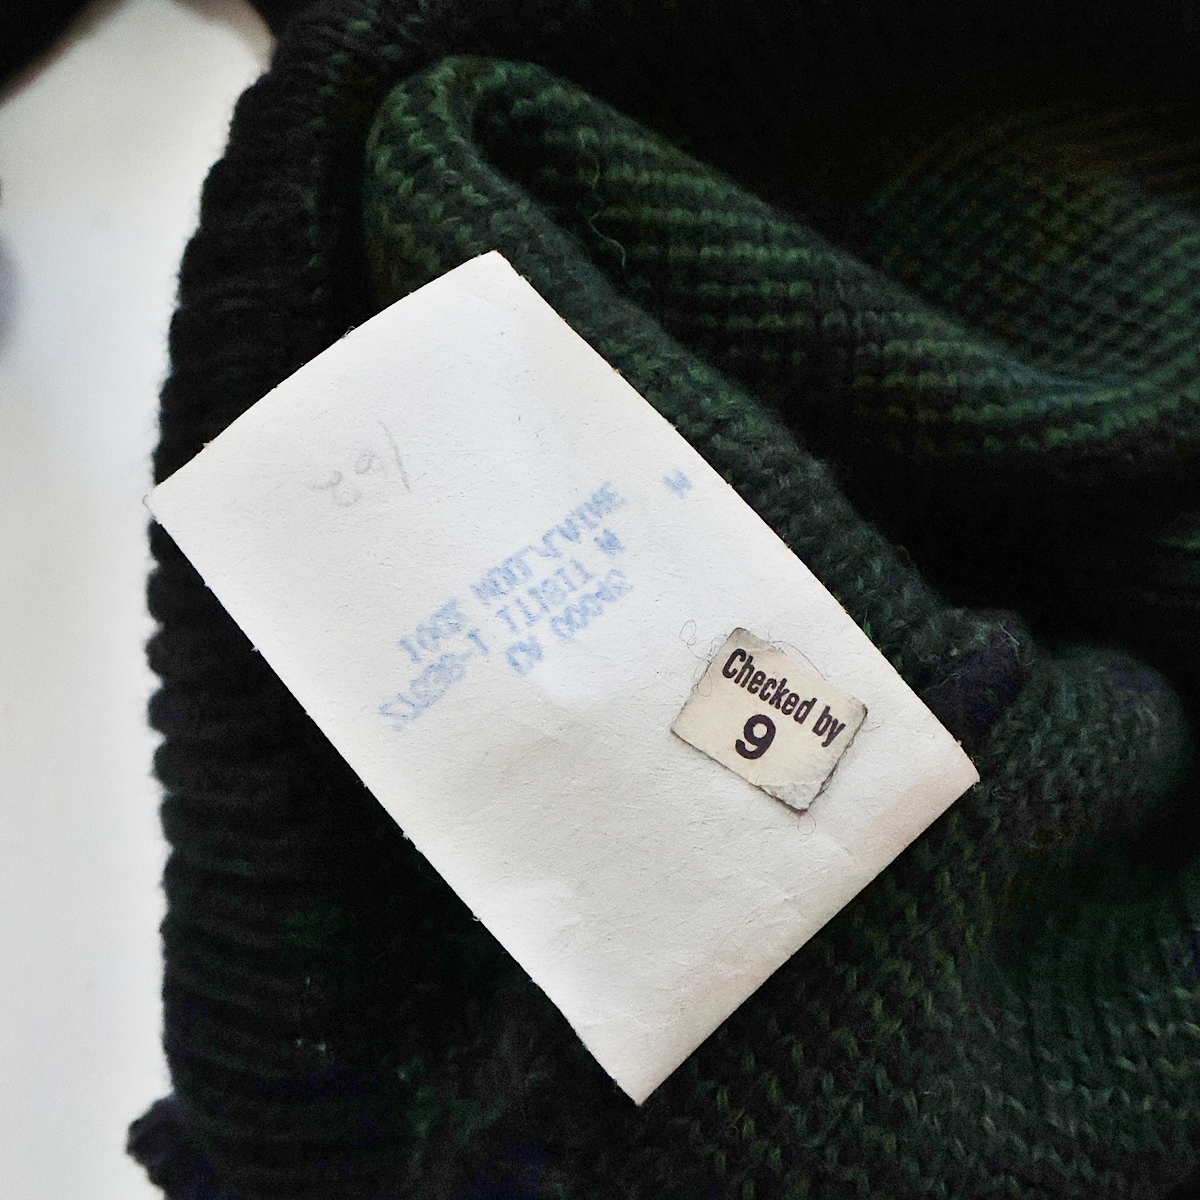 [M размер ]TUNDRA COUNTRYSIDE COLLECTION CANADIAN WILDLIFEtsun гонг Vintage вязаный свитер чёрный × зеленый серия рыба длинный рукав 003FCZFI23